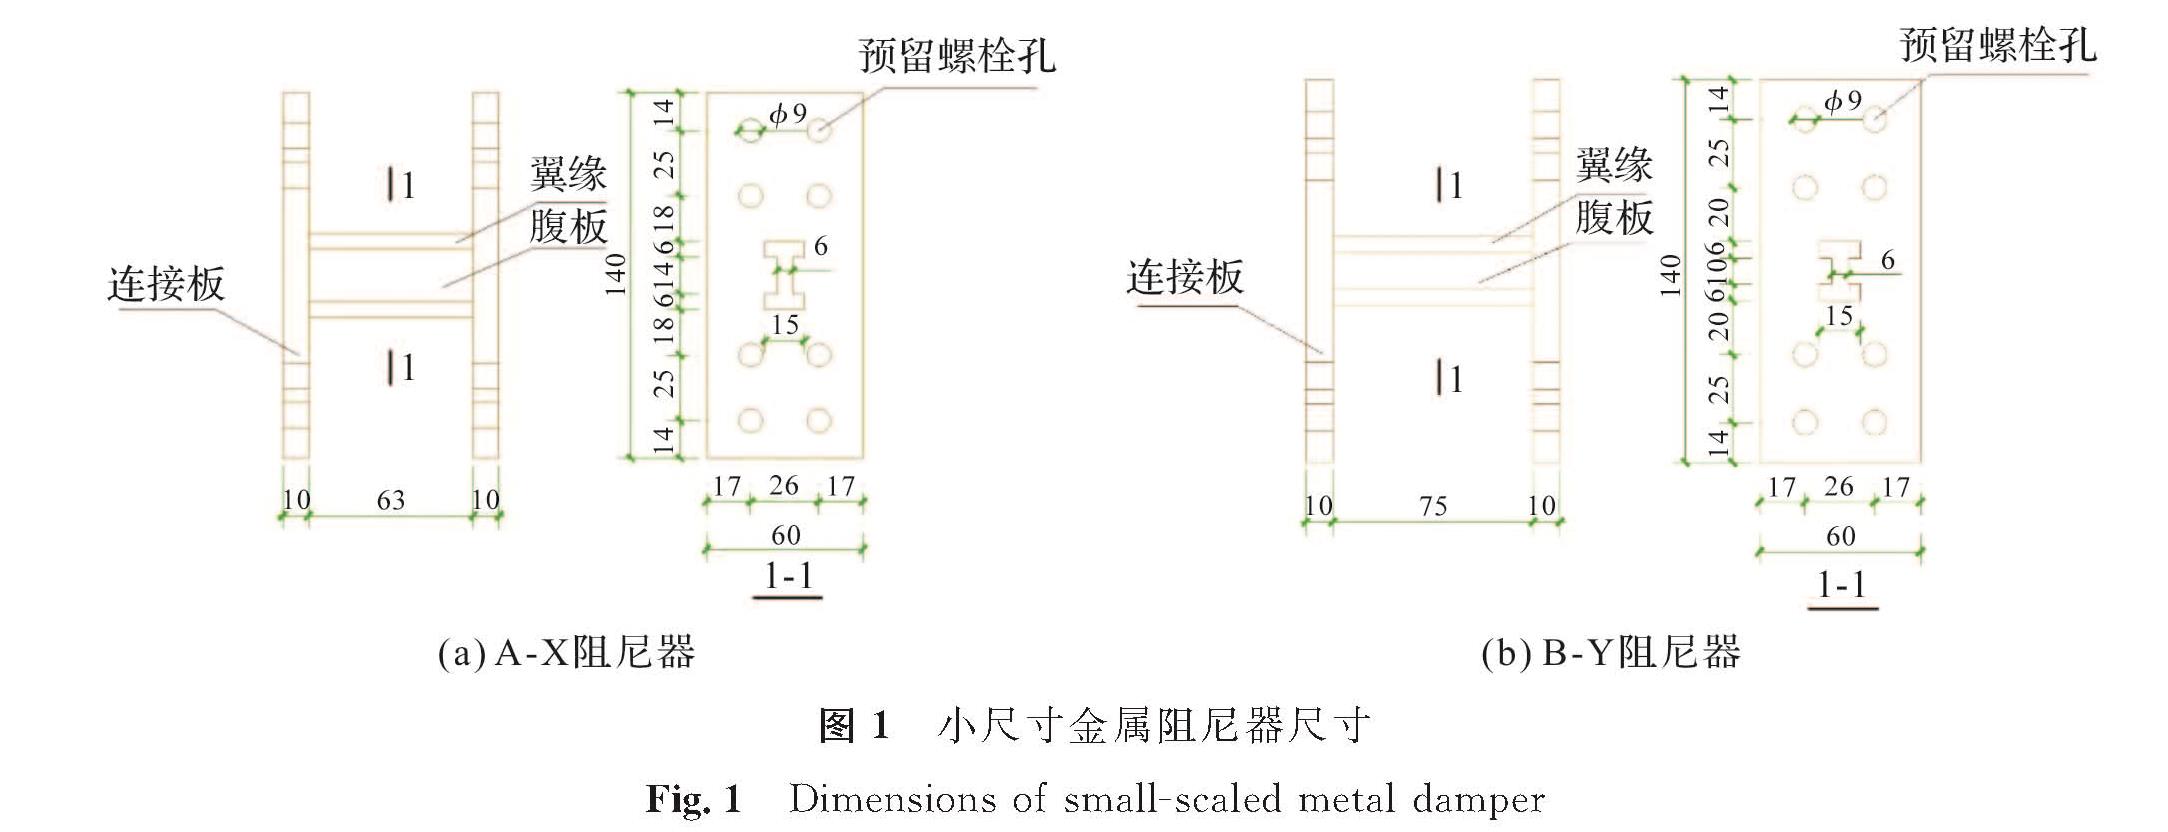 图1 小尺寸金属阻尼器尺寸<br/>Fig.1 Dimensions of small-scaled metal damper